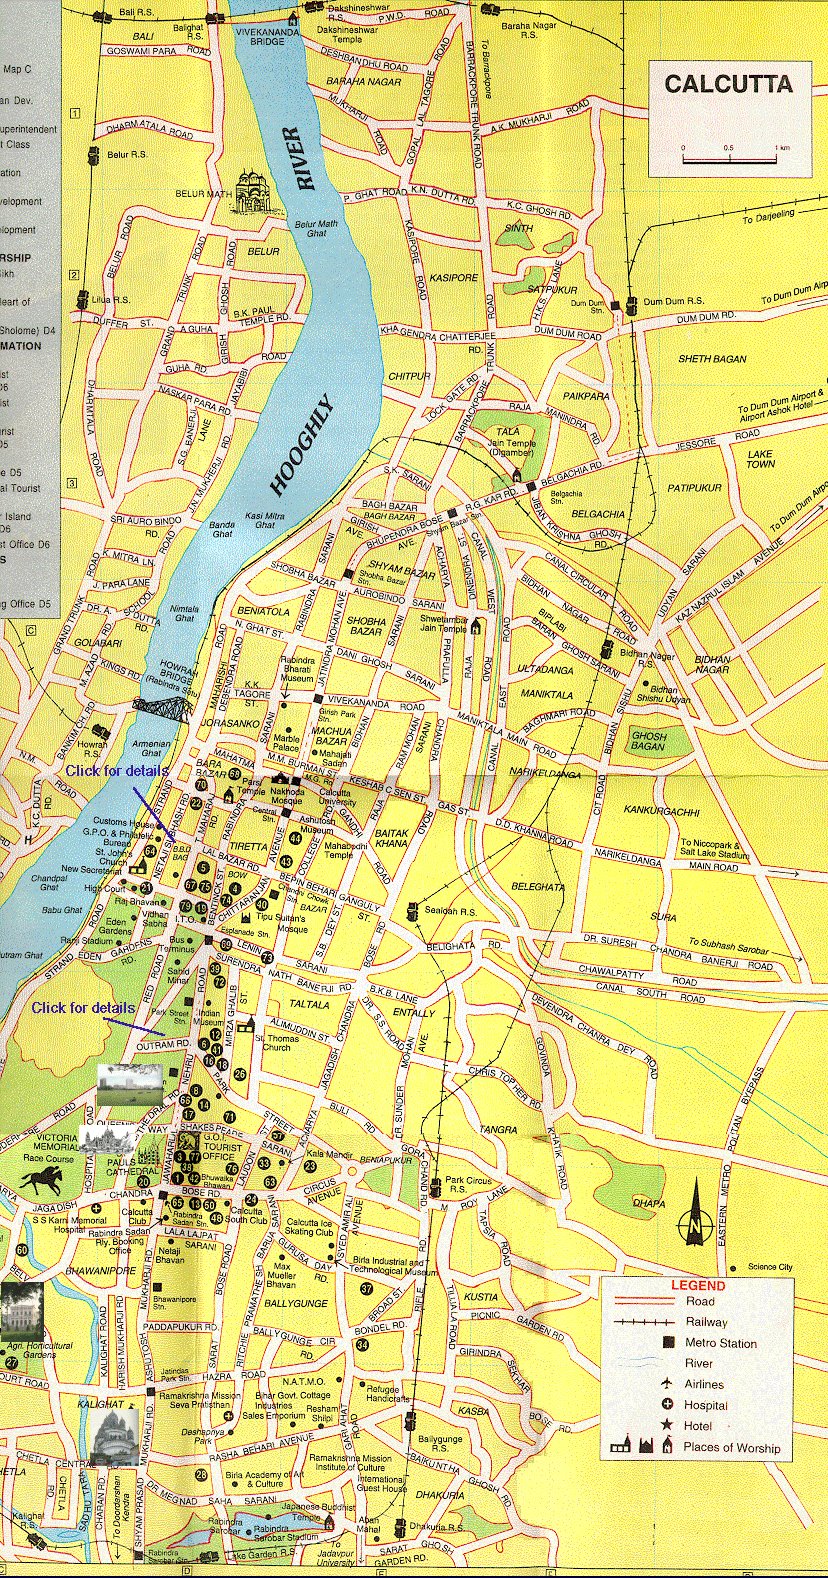 tourist map kolkata